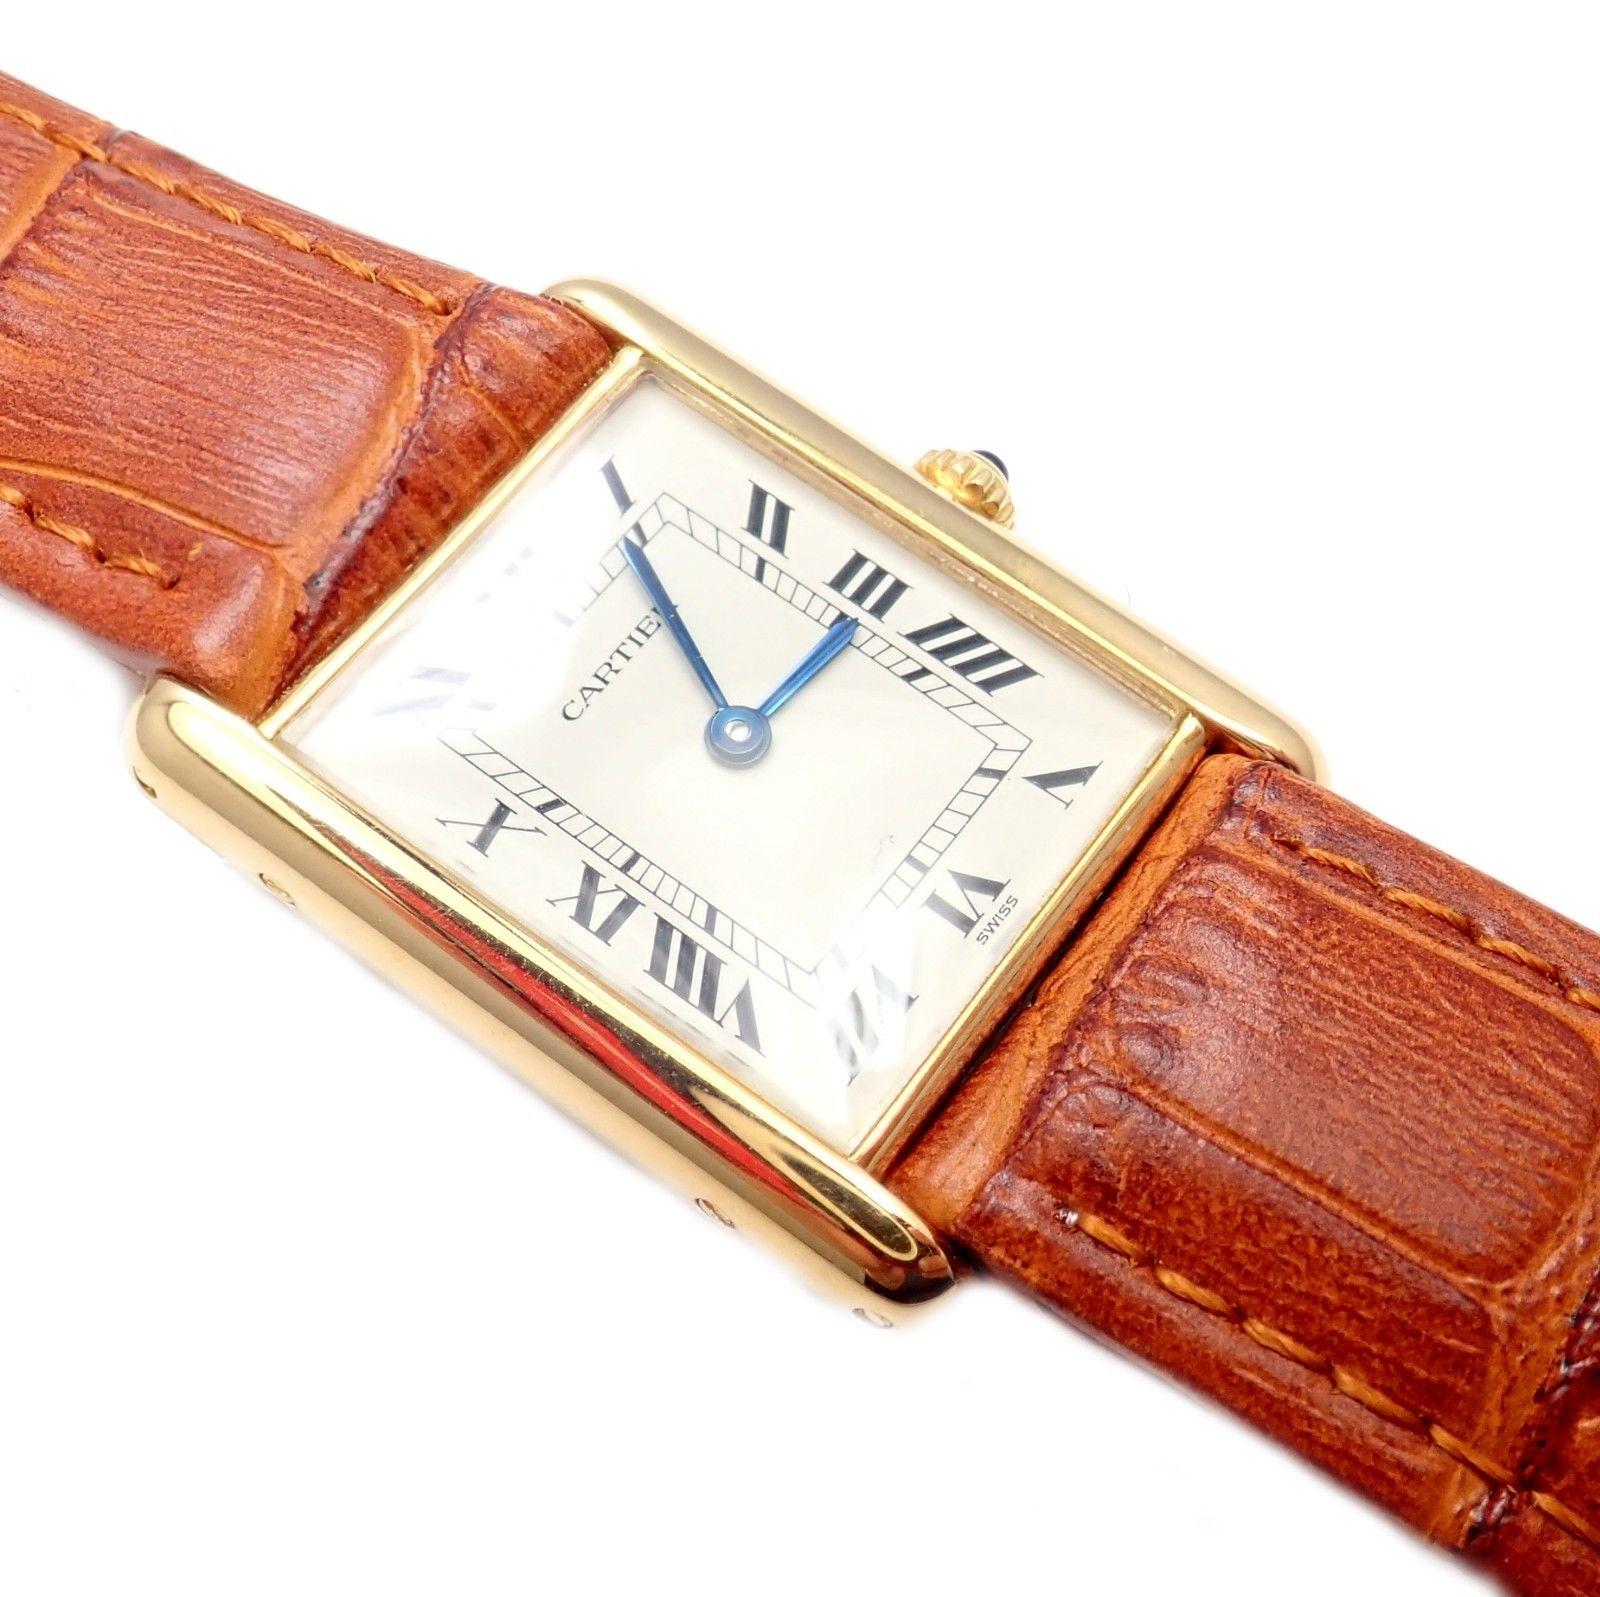 18k yellow gold tank unisex quartz wristwatch by Cartier.
Details: 
Case Dimensions: 23mm x 30mm
Length: Fits 8.25